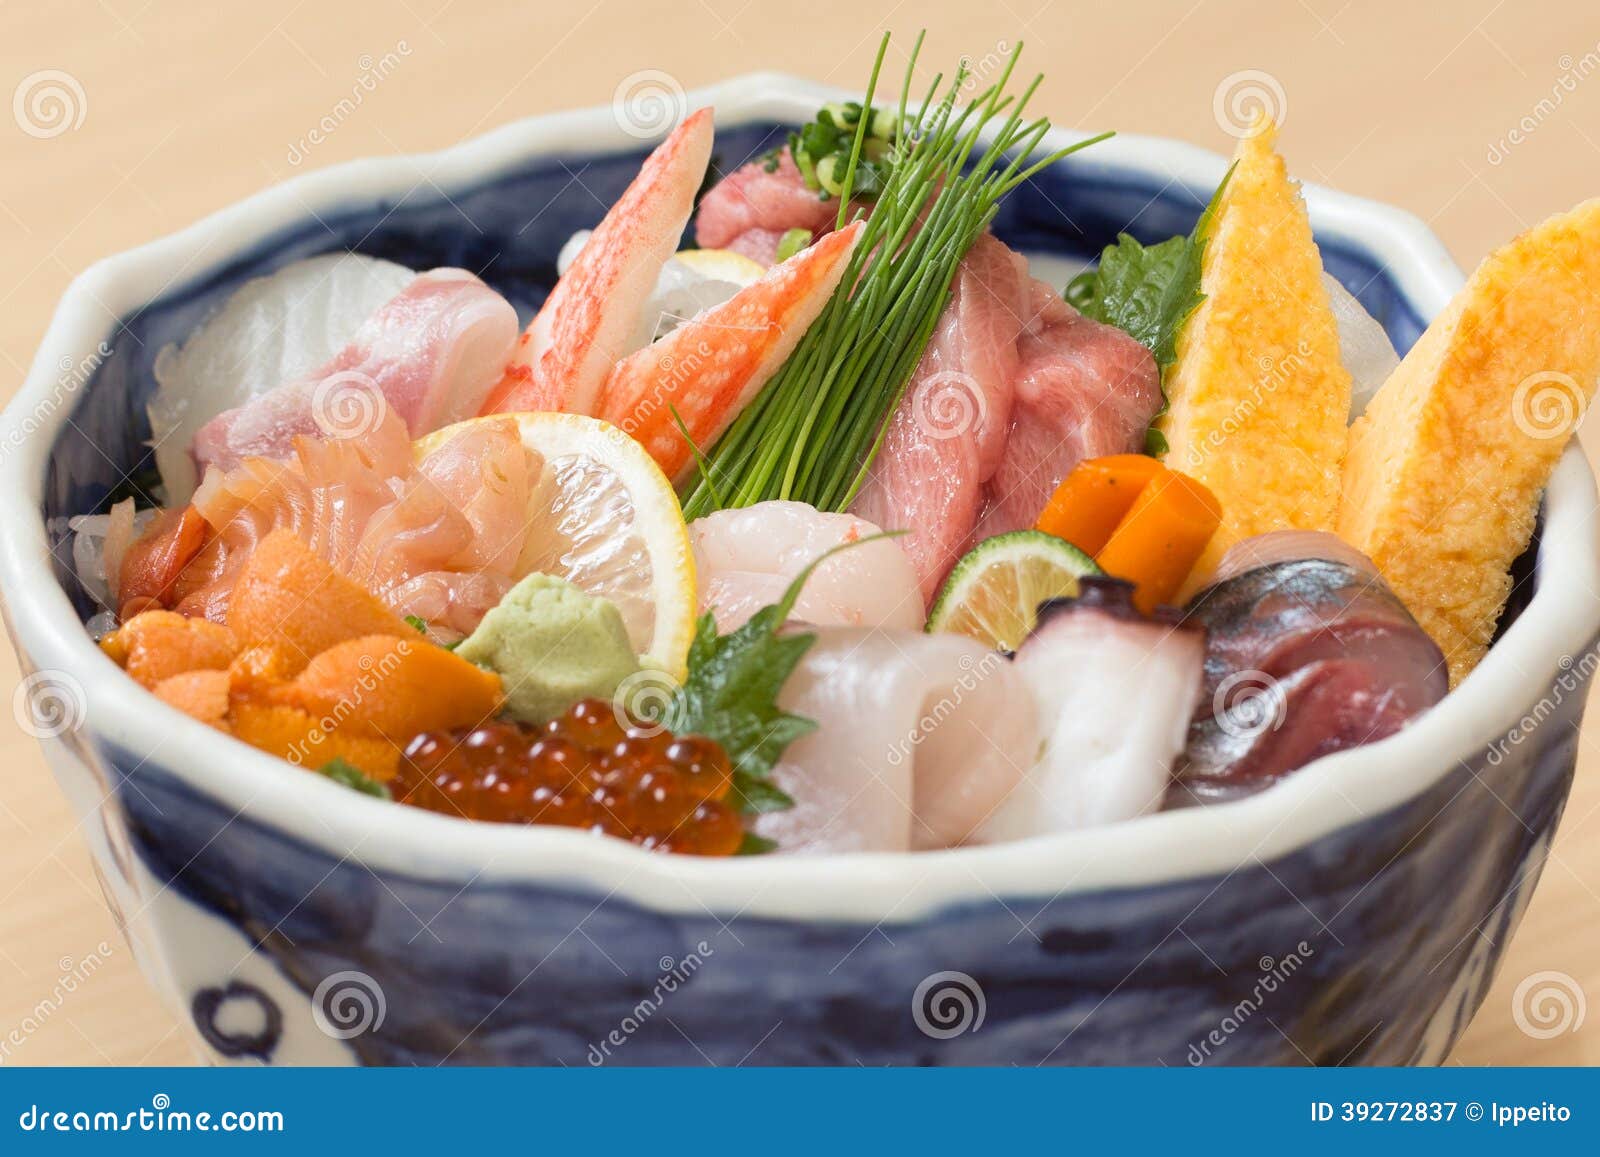 Japanese Sashimi Raw Fish Rice Bowl Stock Image - Image: 39272837